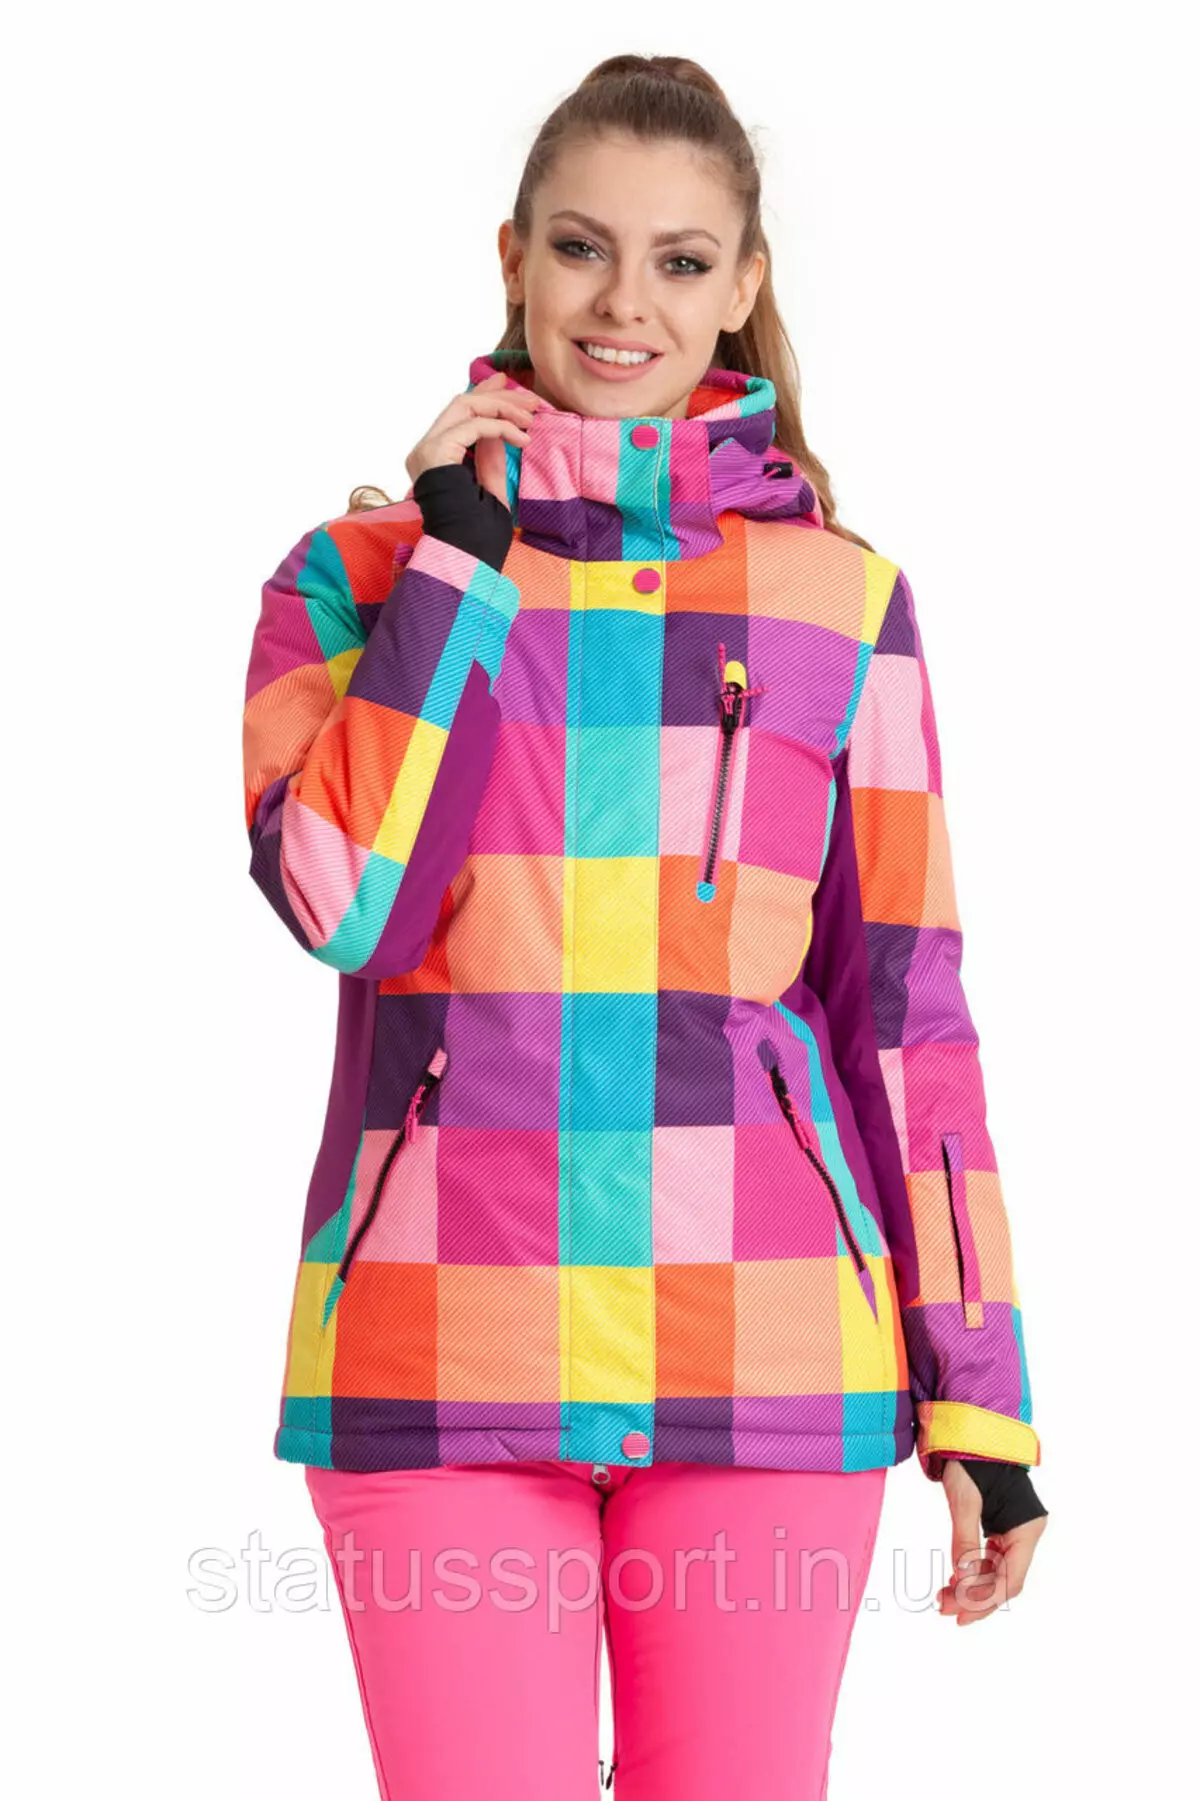 Jacheta de schi: Jacheta de iarnă pentru femei pentru schi fond, jachete de încălzire pentru copii și adulți. Cum de a alege pentru patinaj? 20201_28